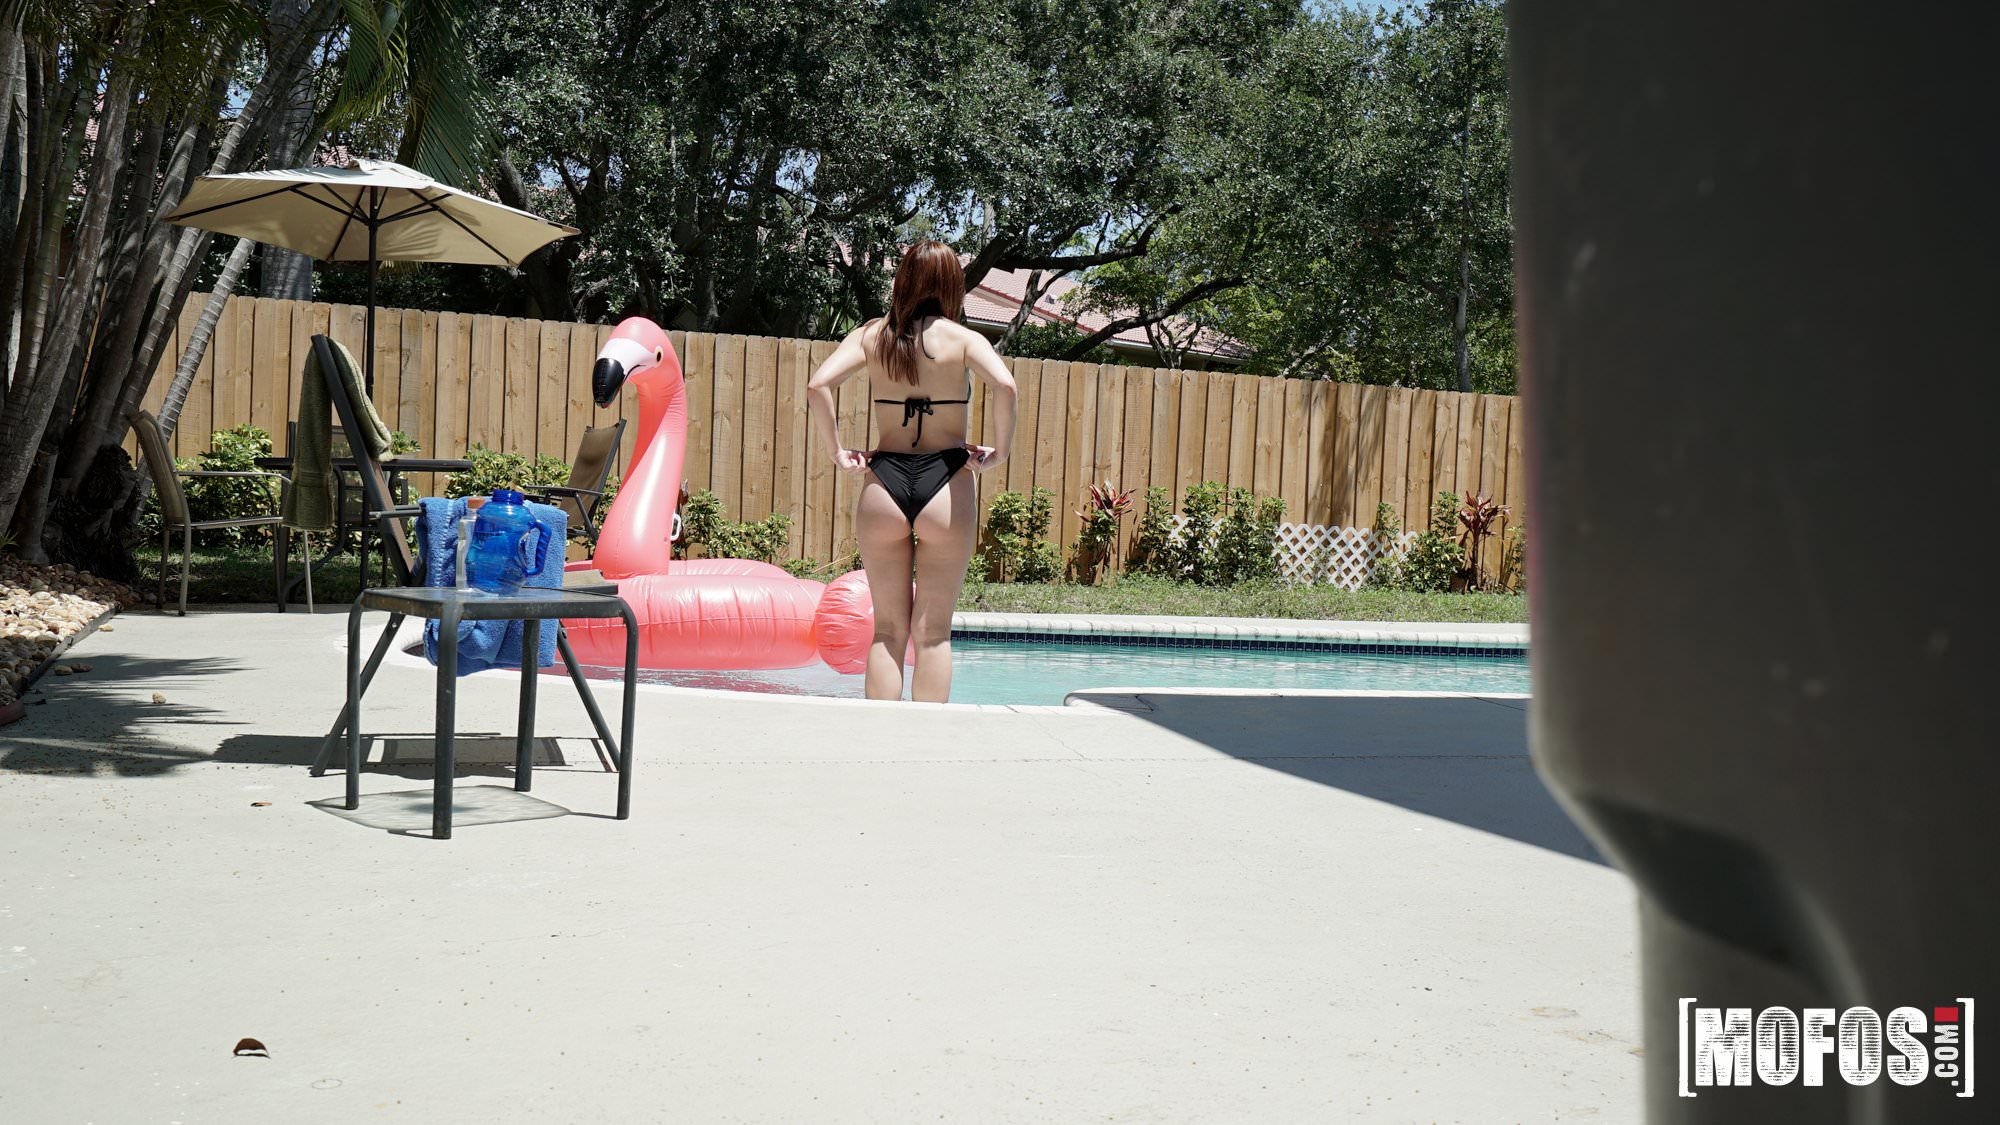 Mofos 'Poolside Peeking' starring Scarlett Johnson (Photo 6)